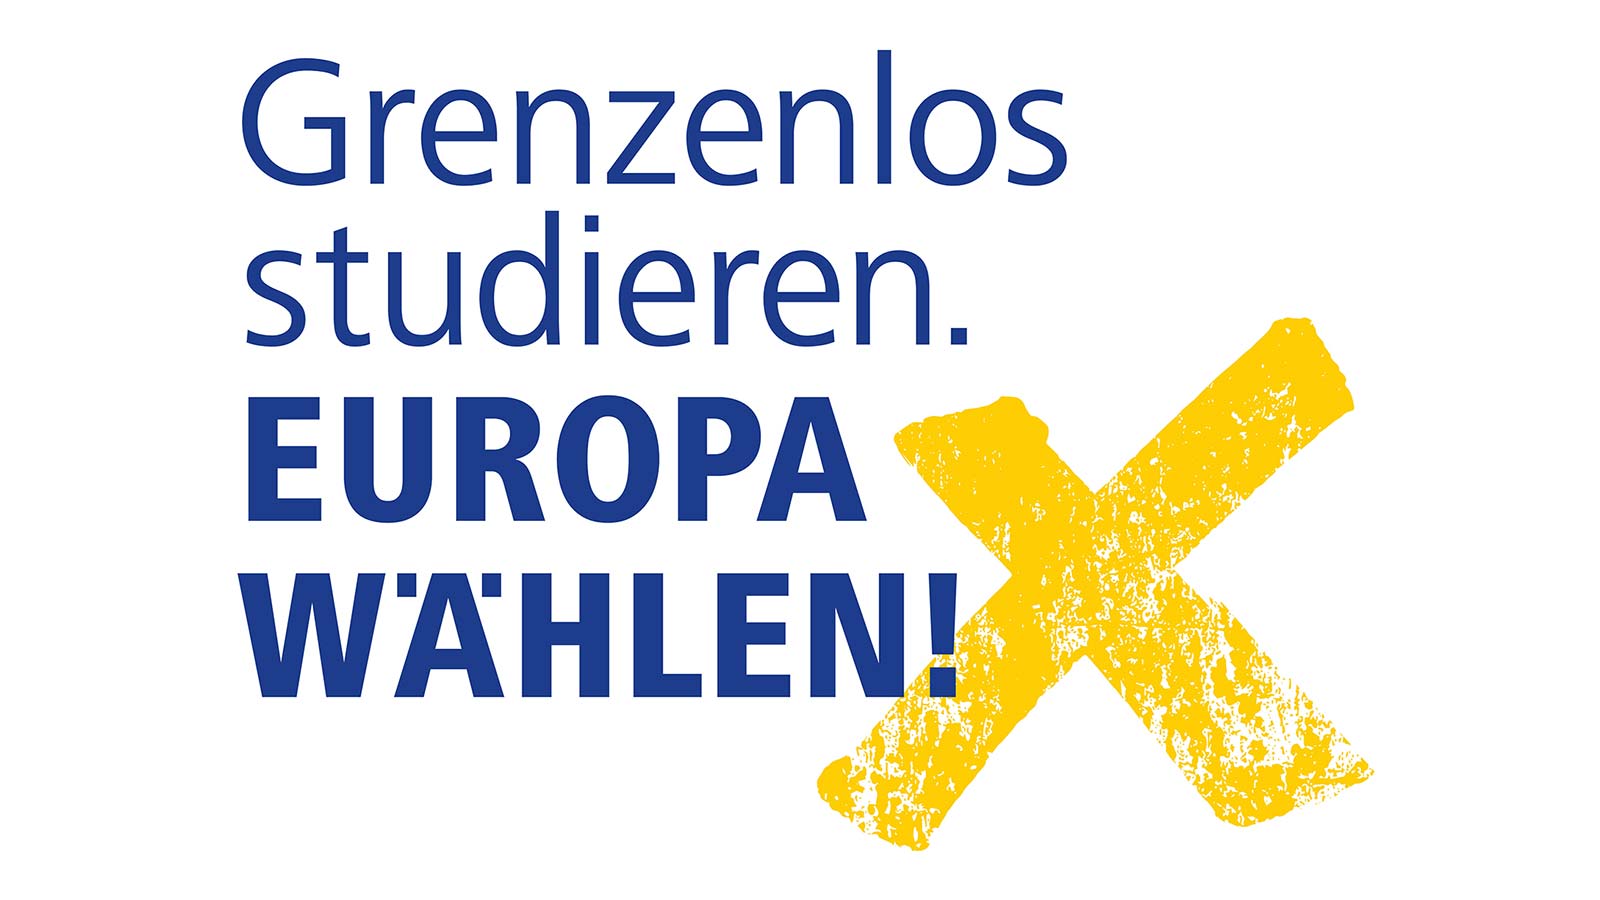 Grenzenlos Studieren, Europ wählen!